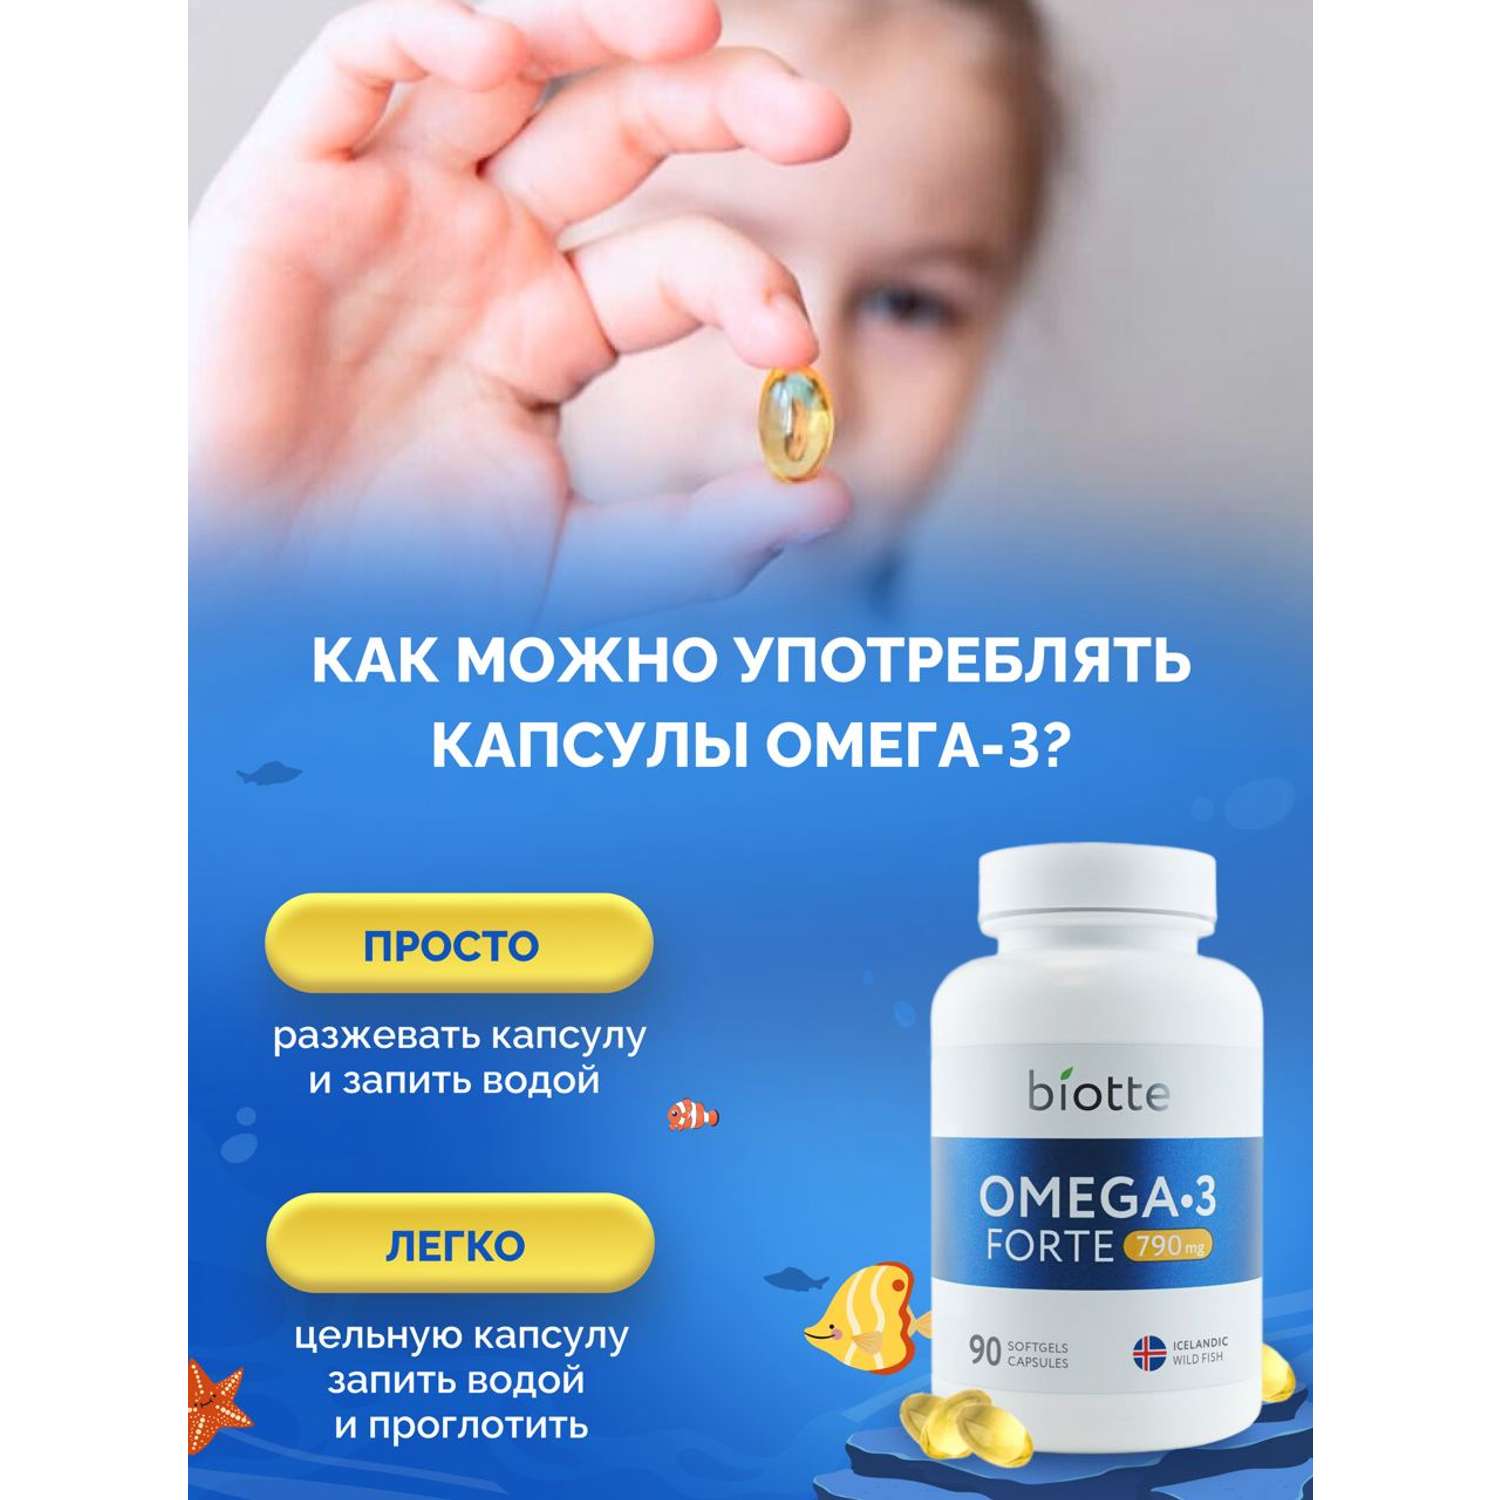 Омега 3 форте BIOTTE 790 mg fish oil премиум рыбий жир для детей подростков взрослых 270 капсул - фото 7